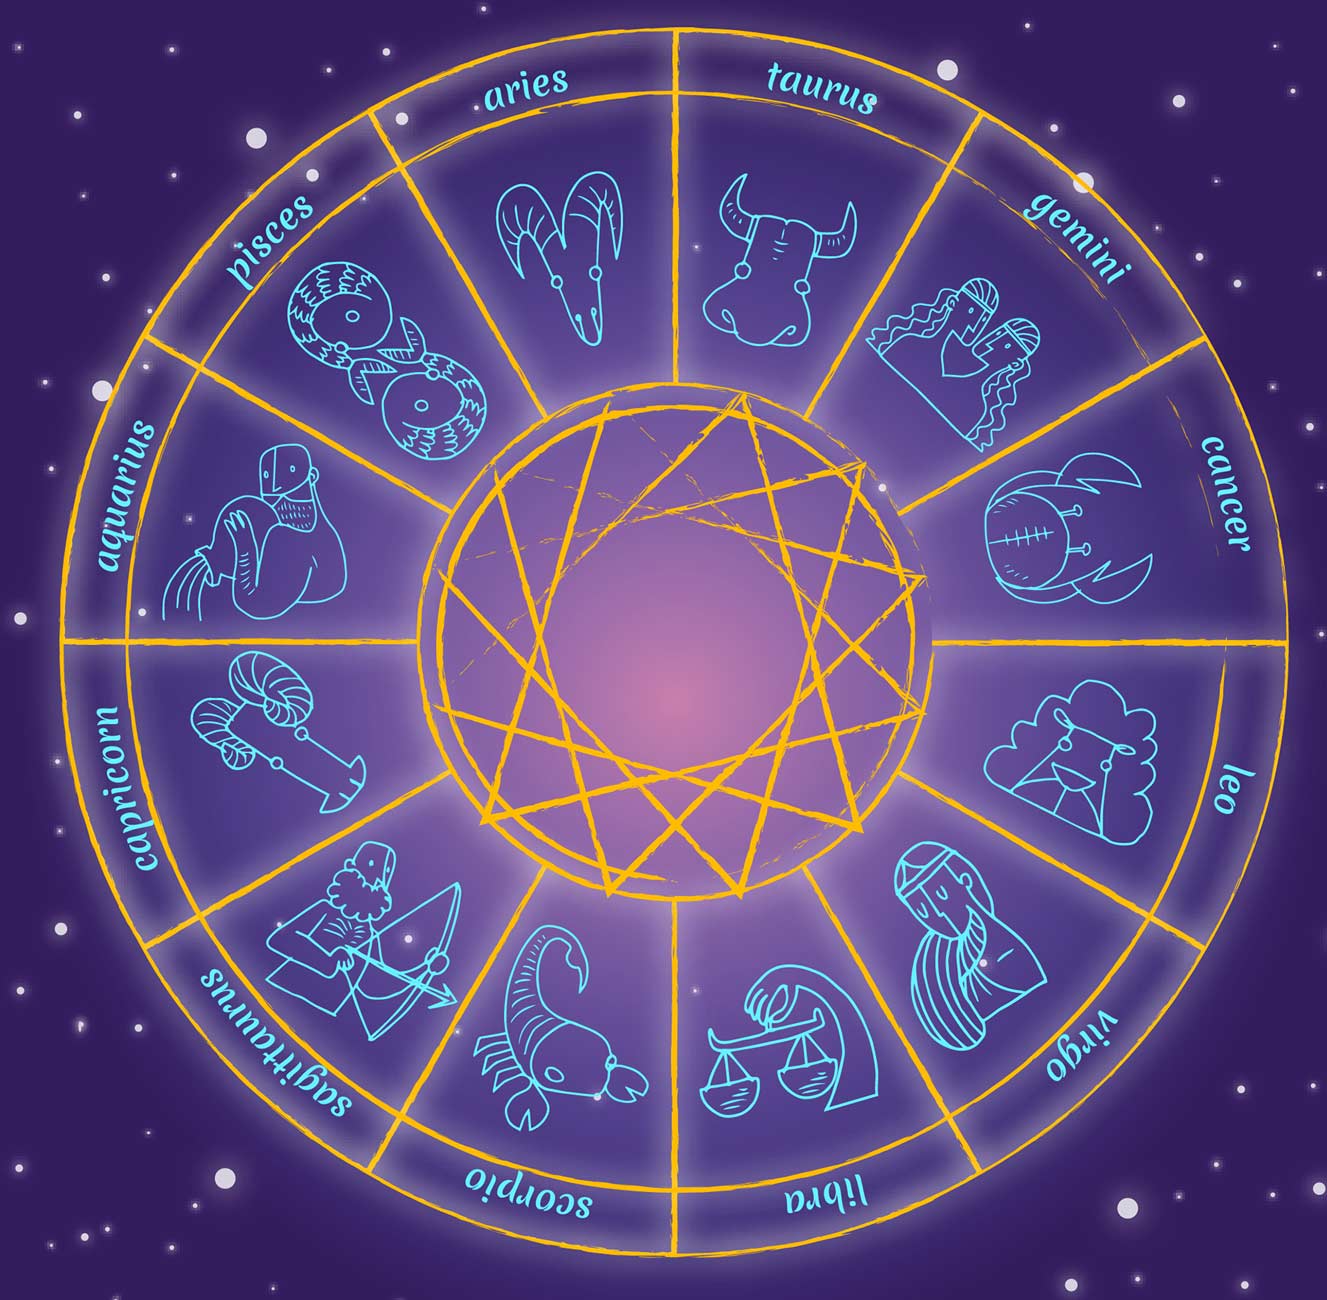 Гороскоп удачи на год. Колесо зодиака. Знаки зодиака колесо. Зодиакальный круг. Кармическое колесо знаков зодиака.